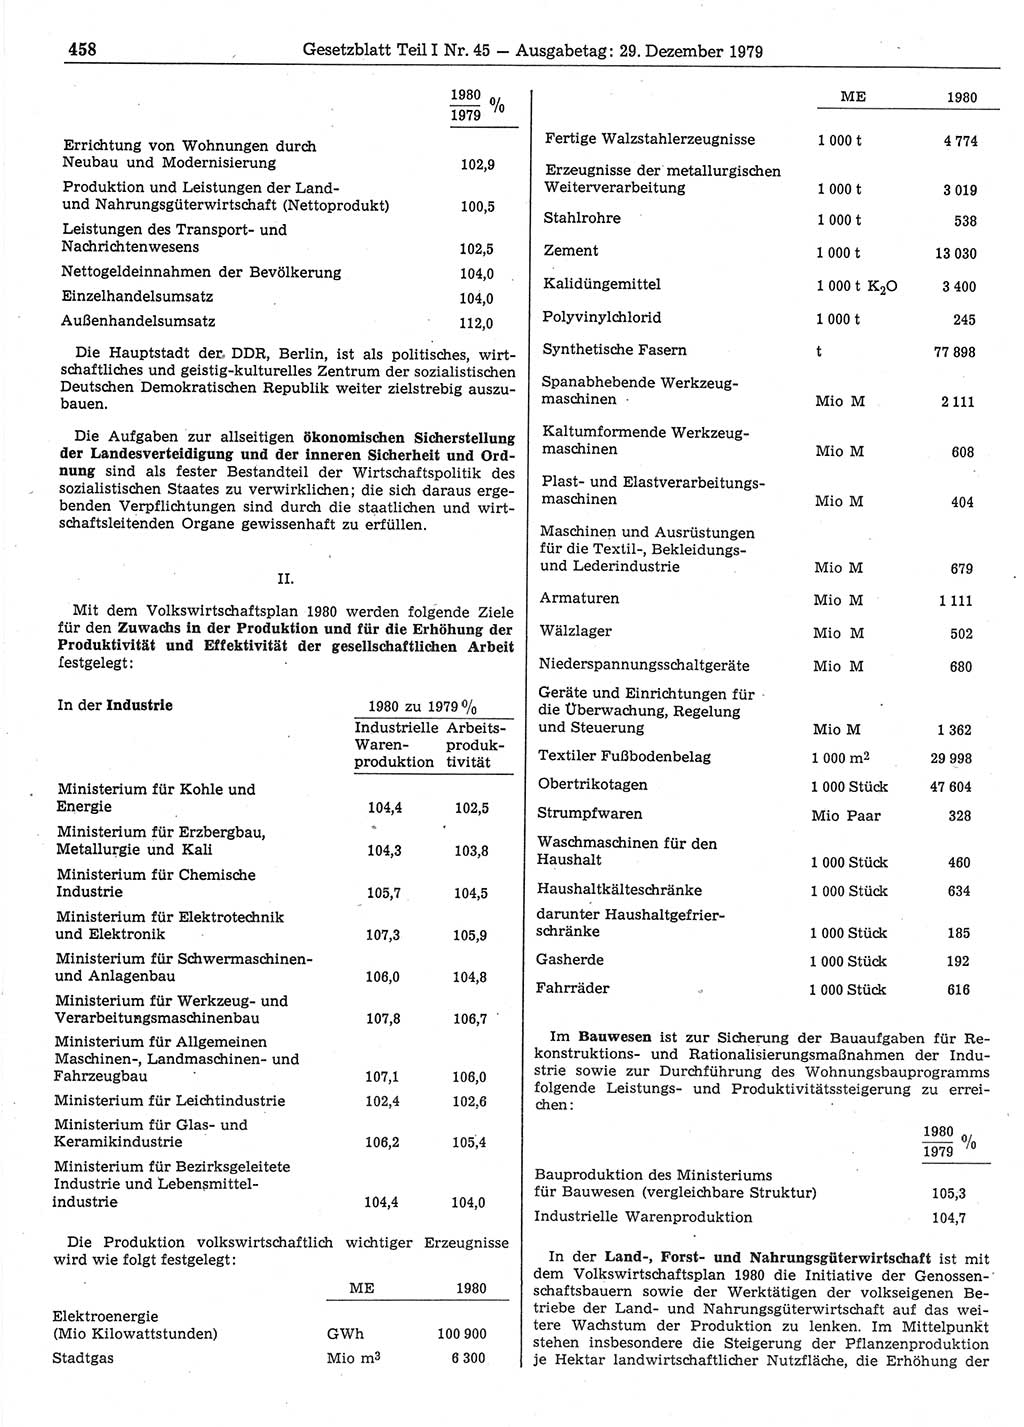 Gesetzblatt (GBl.) der Deutschen Demokratischen Republik (DDR) Teil Ⅰ 1979, Seite 458 (GBl. DDR Ⅰ 1979, S. 458)